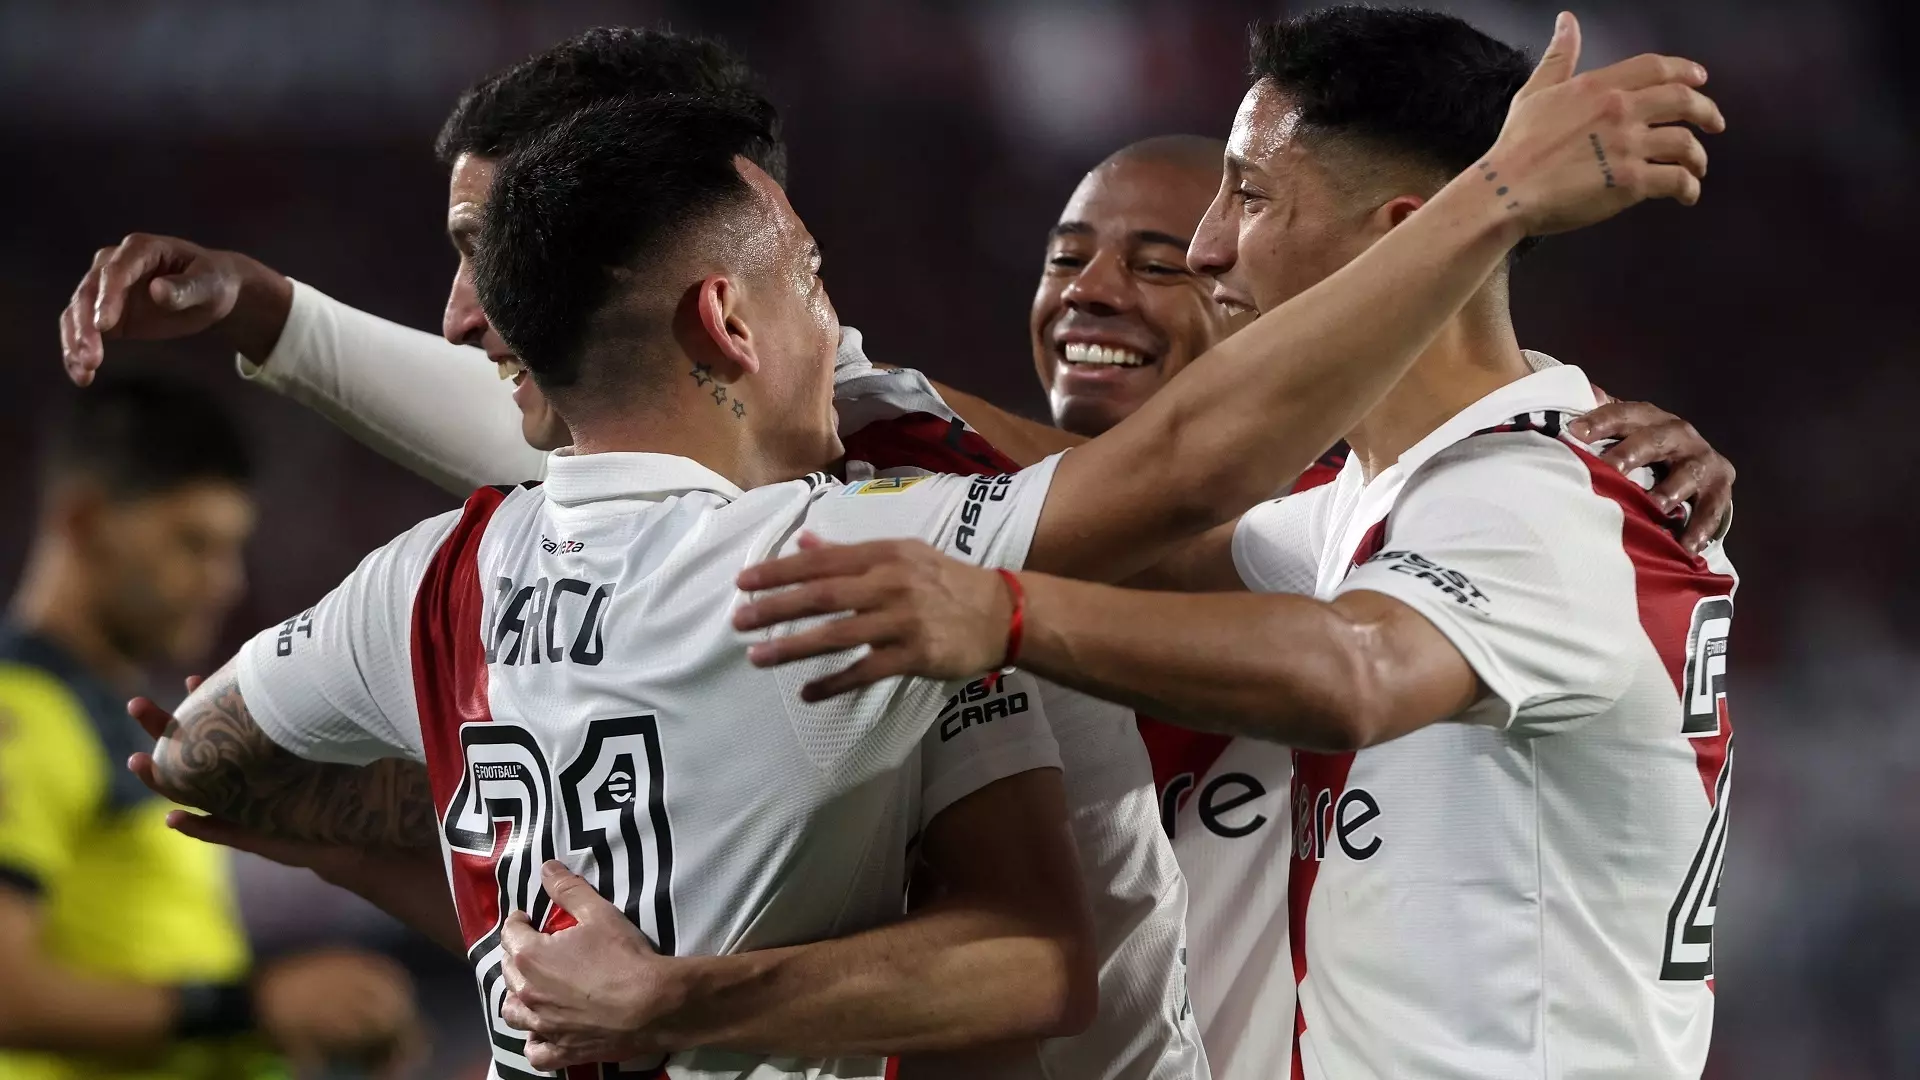 Trentottesimo titolo argentino per il River Plate